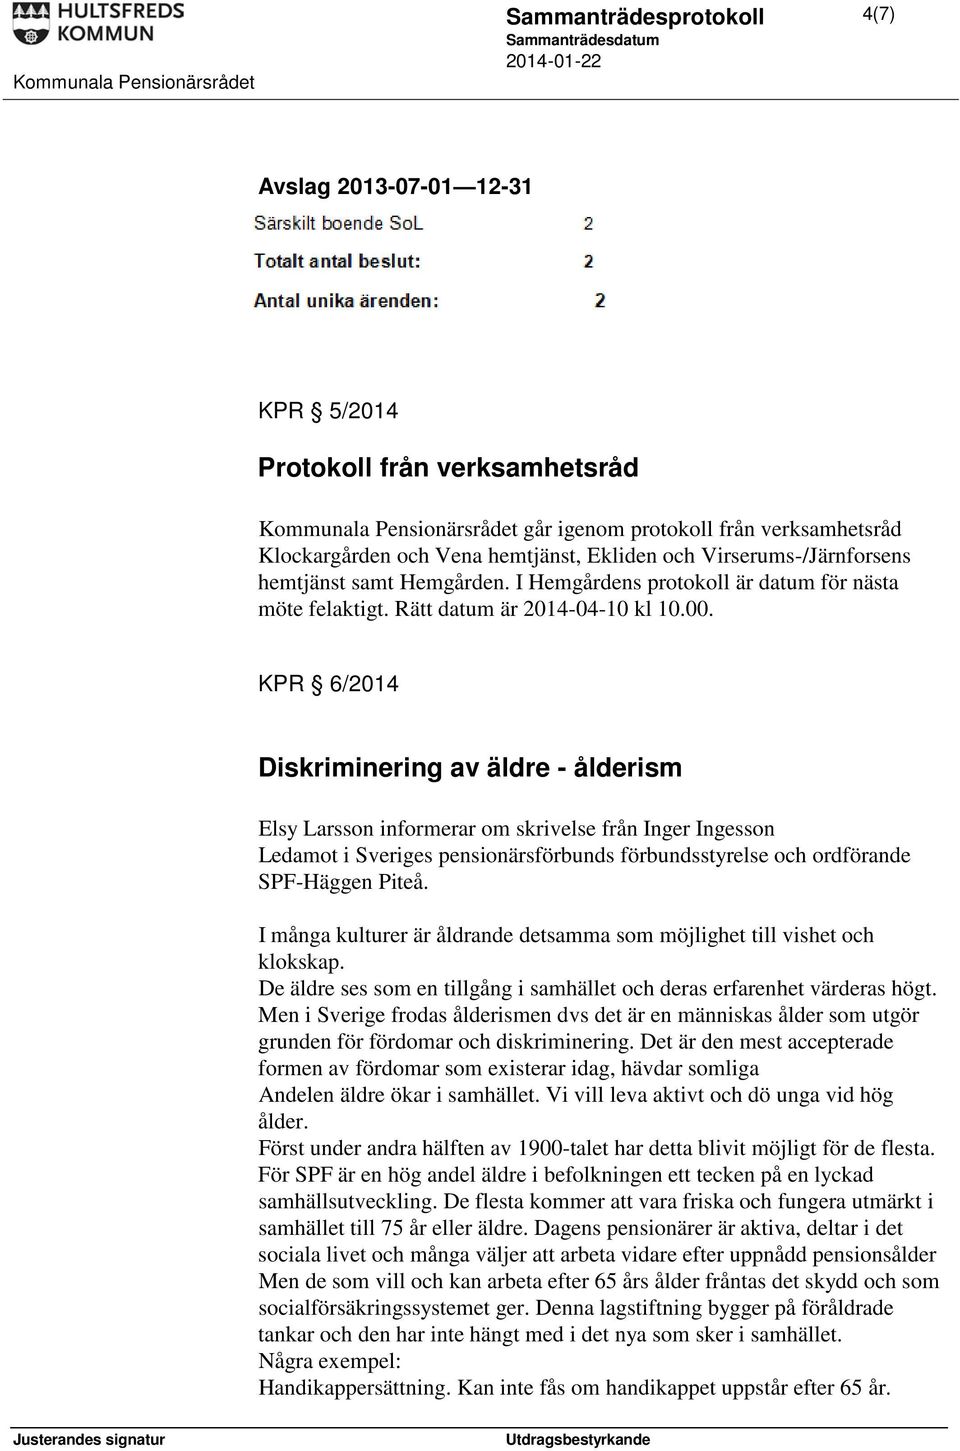 KPR 6/2014 Diskriminering av äldre - ålderism Elsy Larsson informerar om skrivelse från Inger Ingesson Ledamot i Sveriges pensionärsförbunds förbundsstyrelse och ordförande SPF-Häggen Piteå.